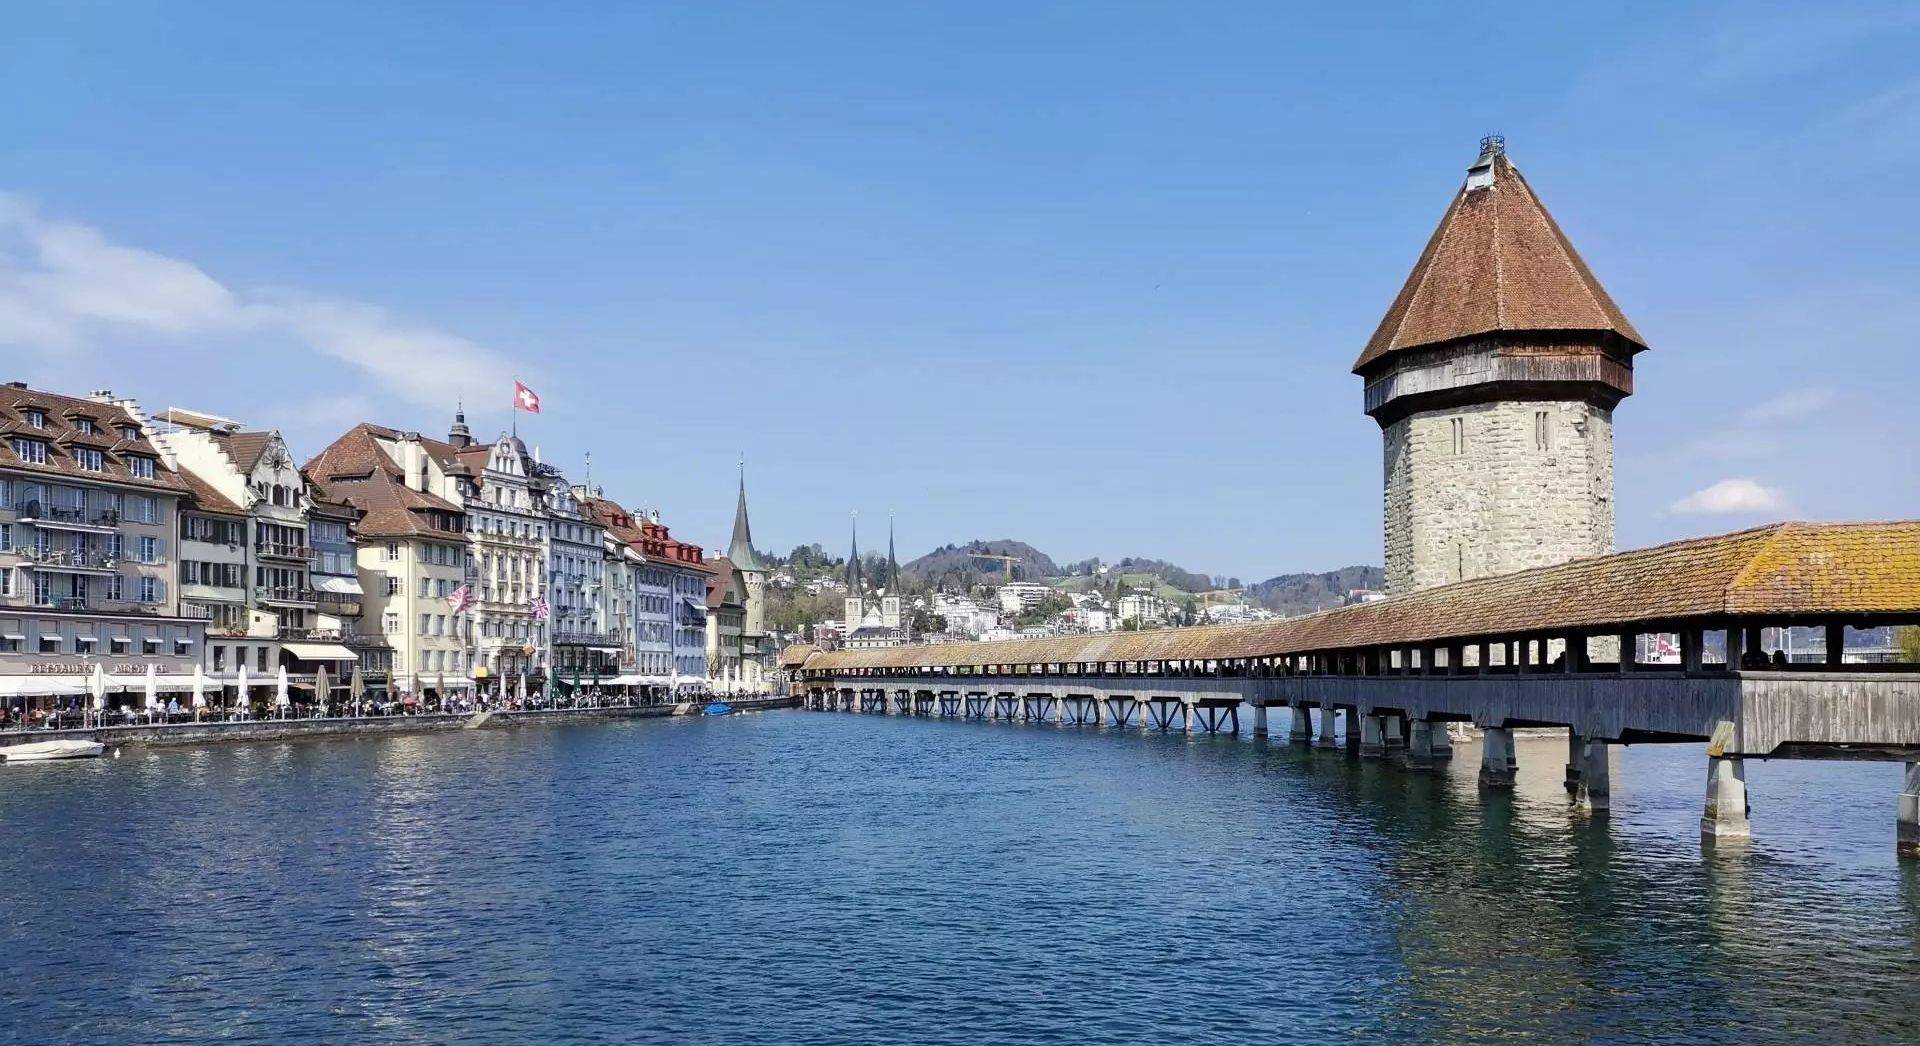 Hafen in Luzern